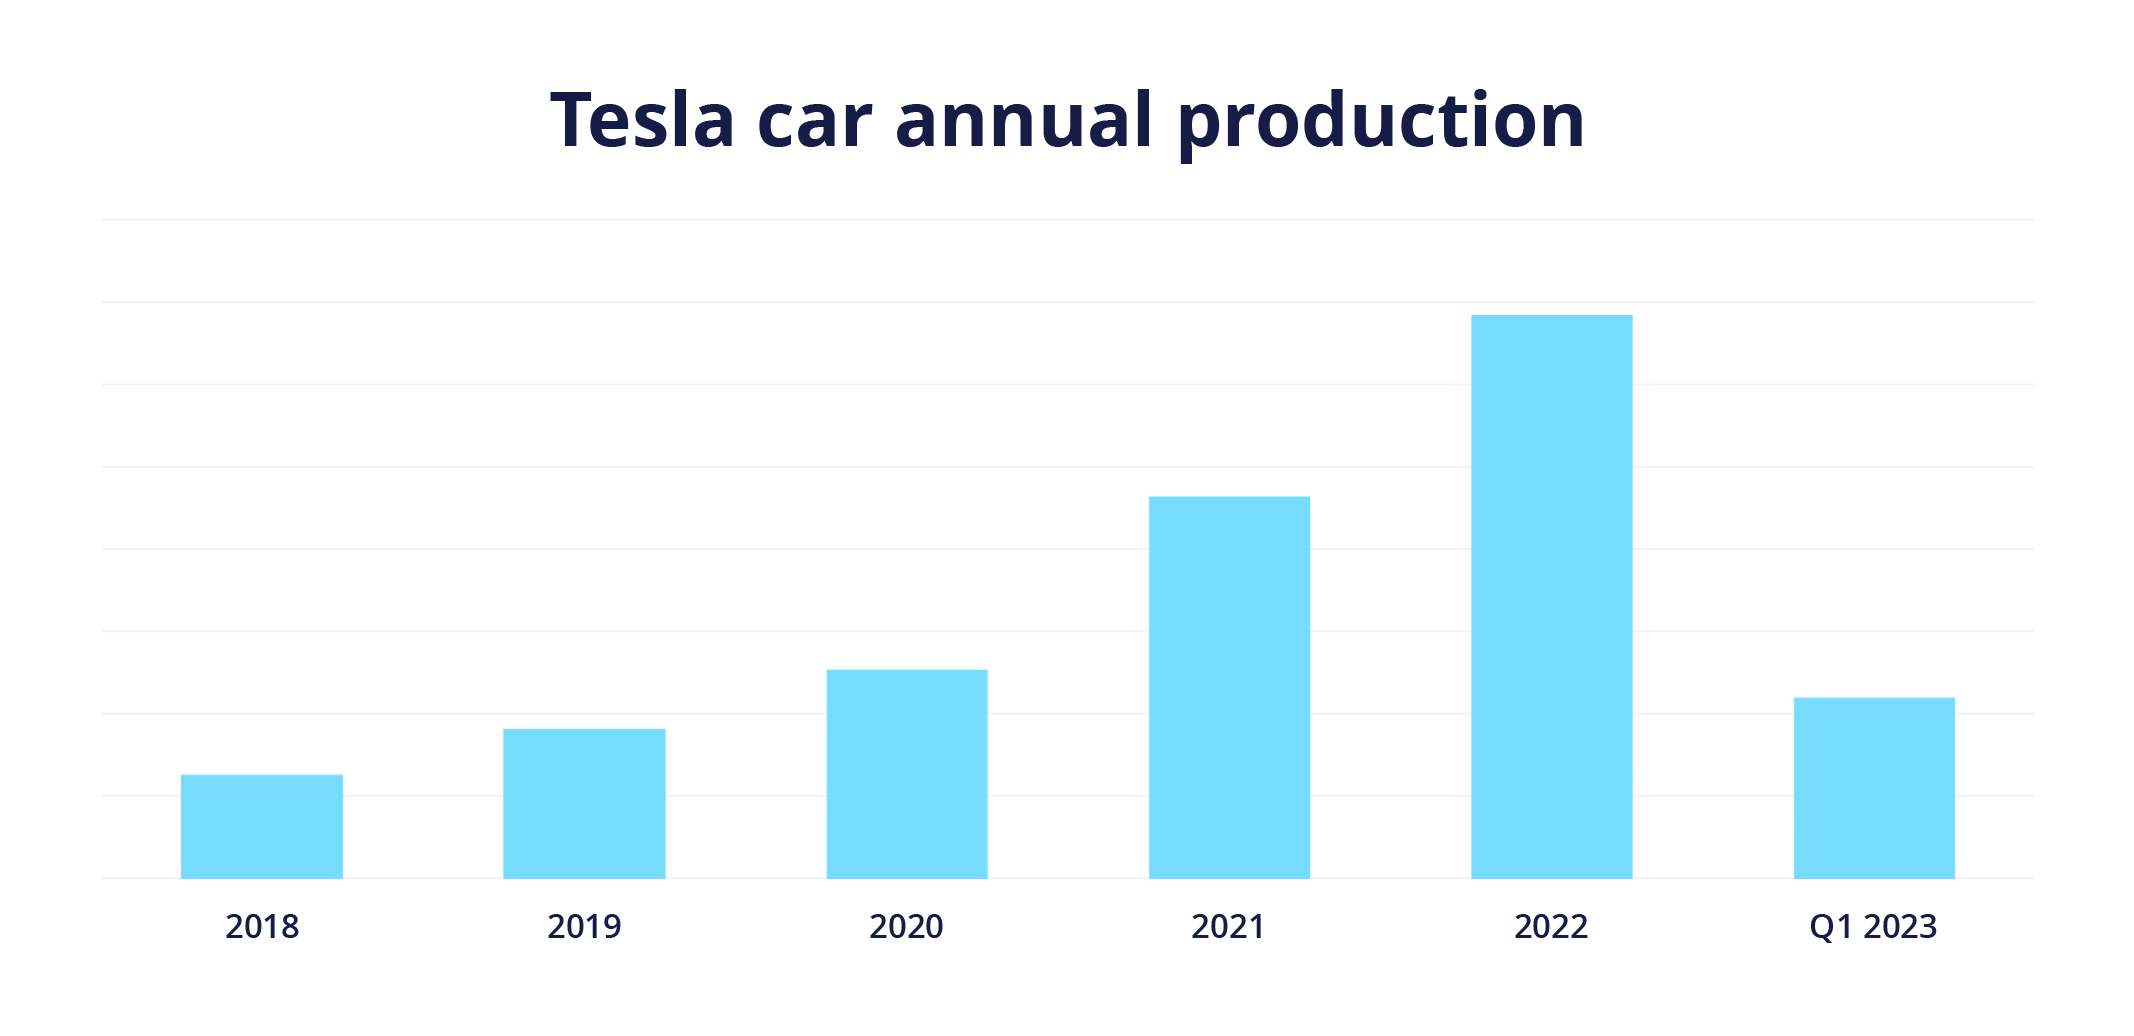 Produzione annuale di auto Tesla dal 2018 al 2022